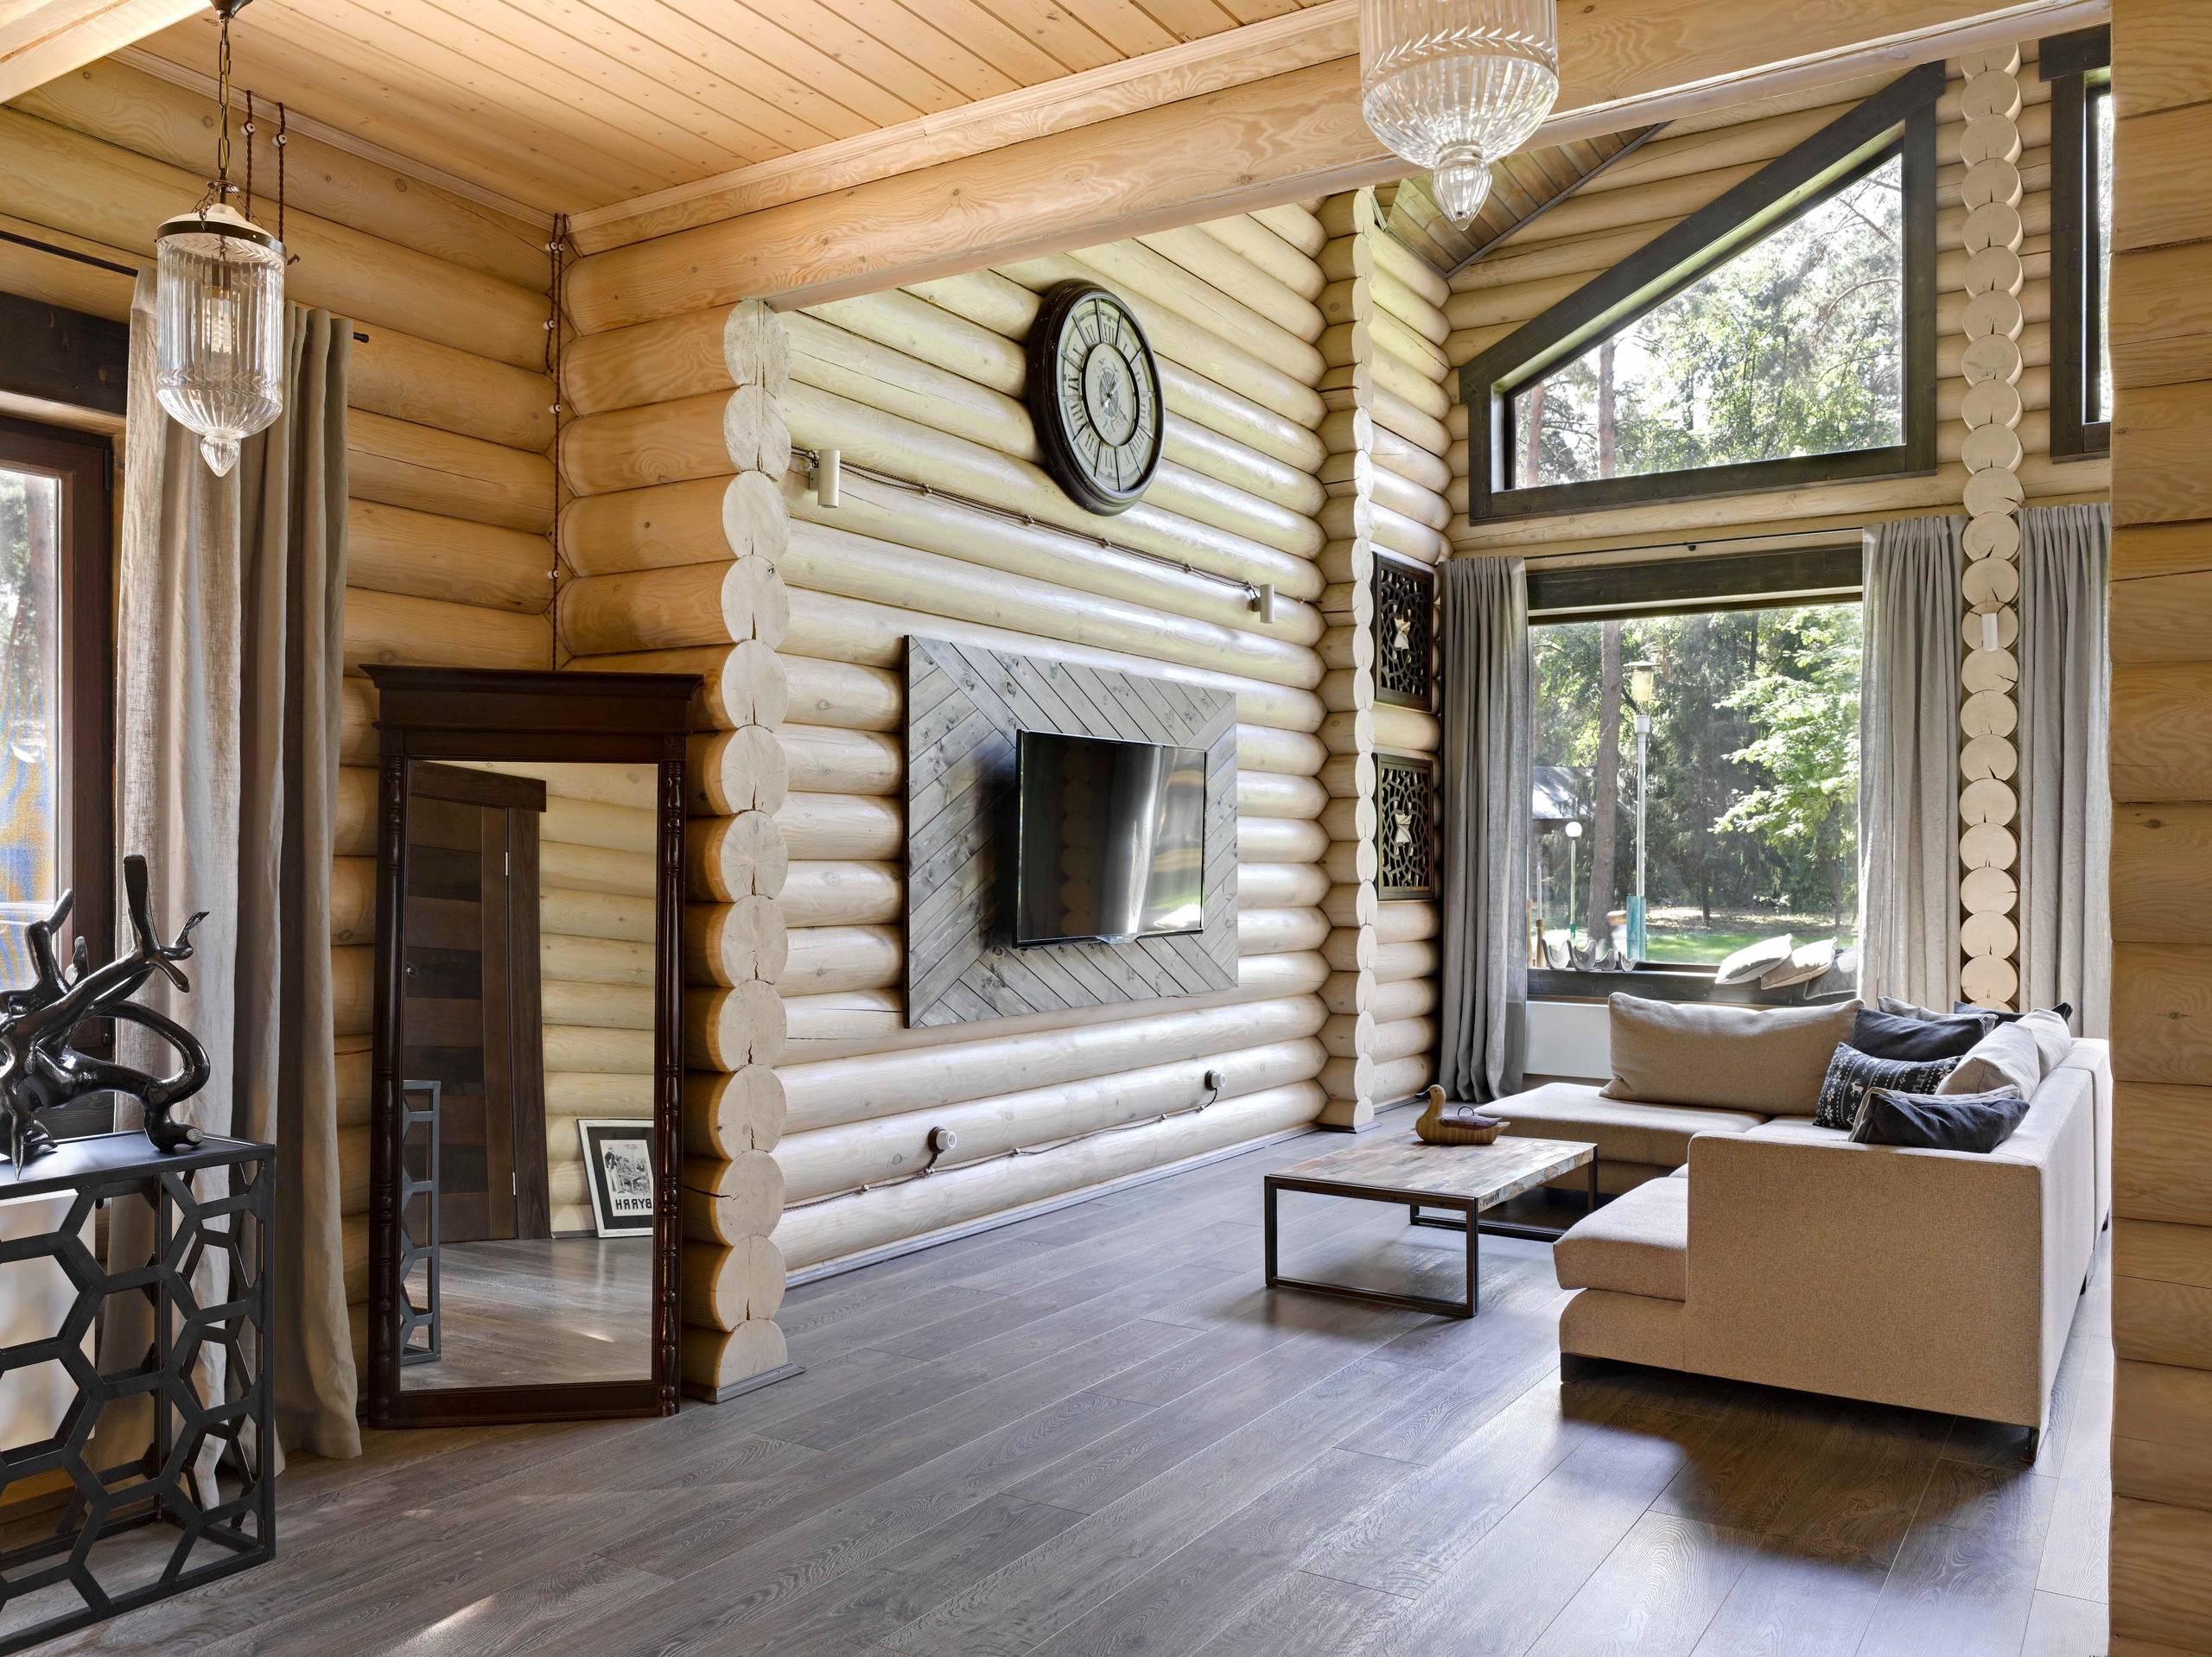 Как оформить интерьер деревянного дома современно и стильно: 6 популярных направлений